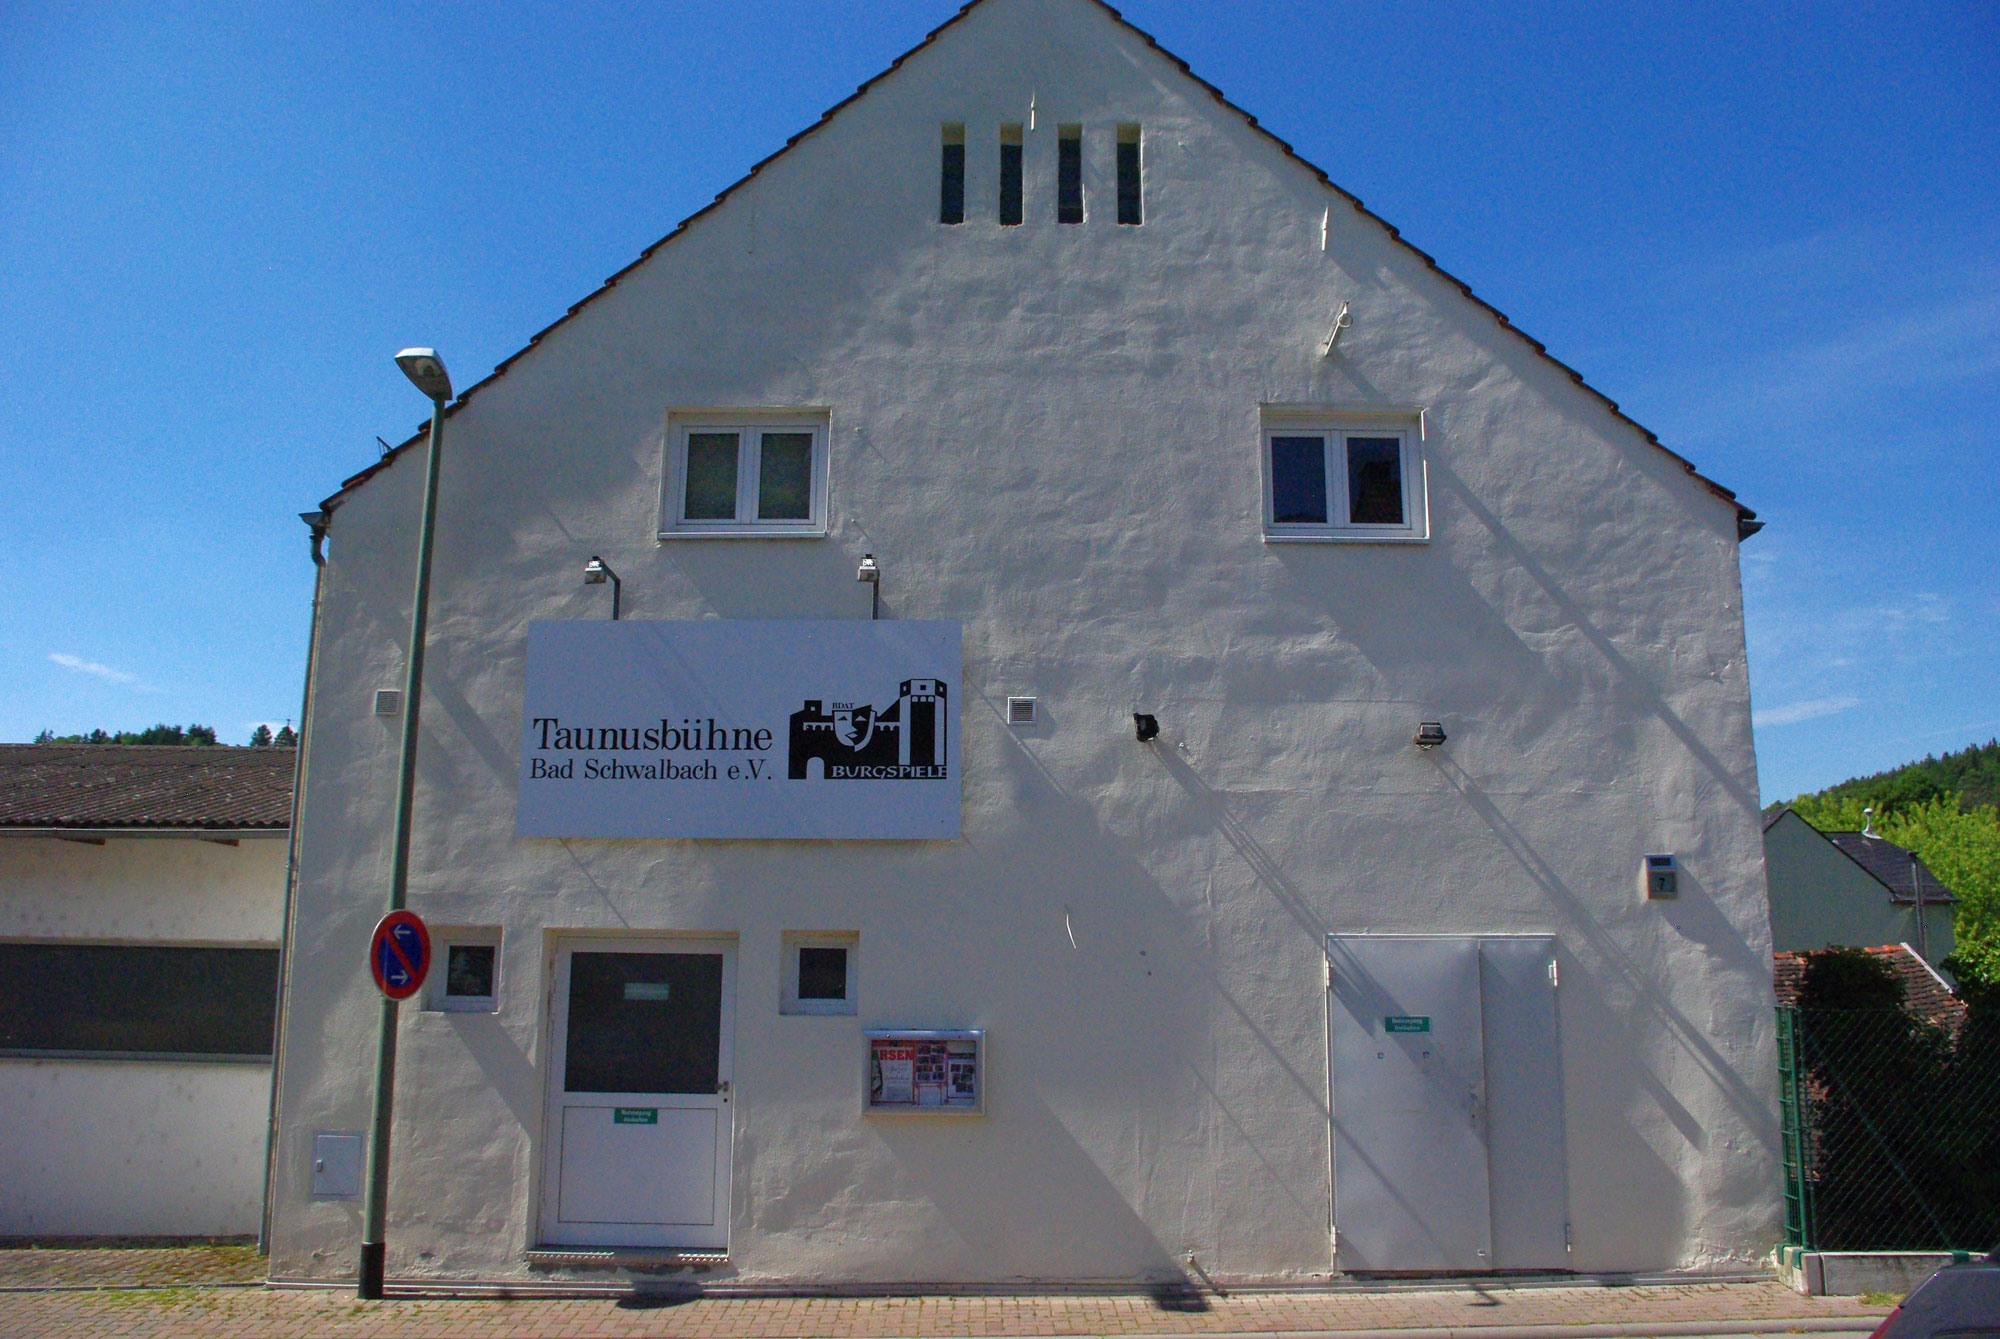 kleines.theater Taunusbühne Bad Schwalbach e.V. - Aussenansicht - Eingang auf der rechten Seite